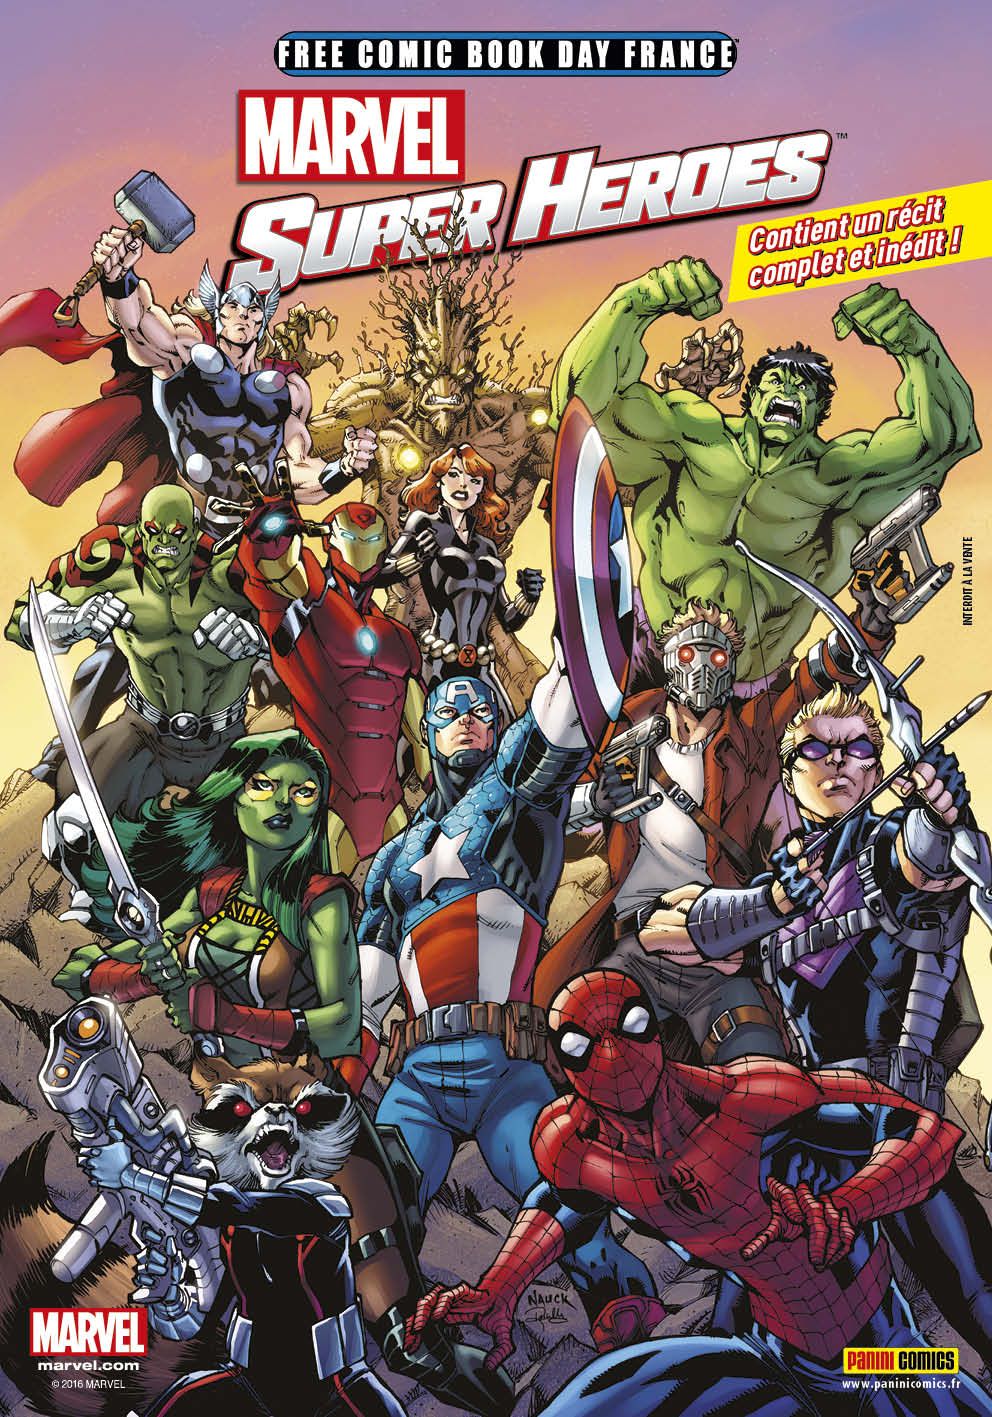 Free Comic Book Day Marvel Super Heroes SensCritique